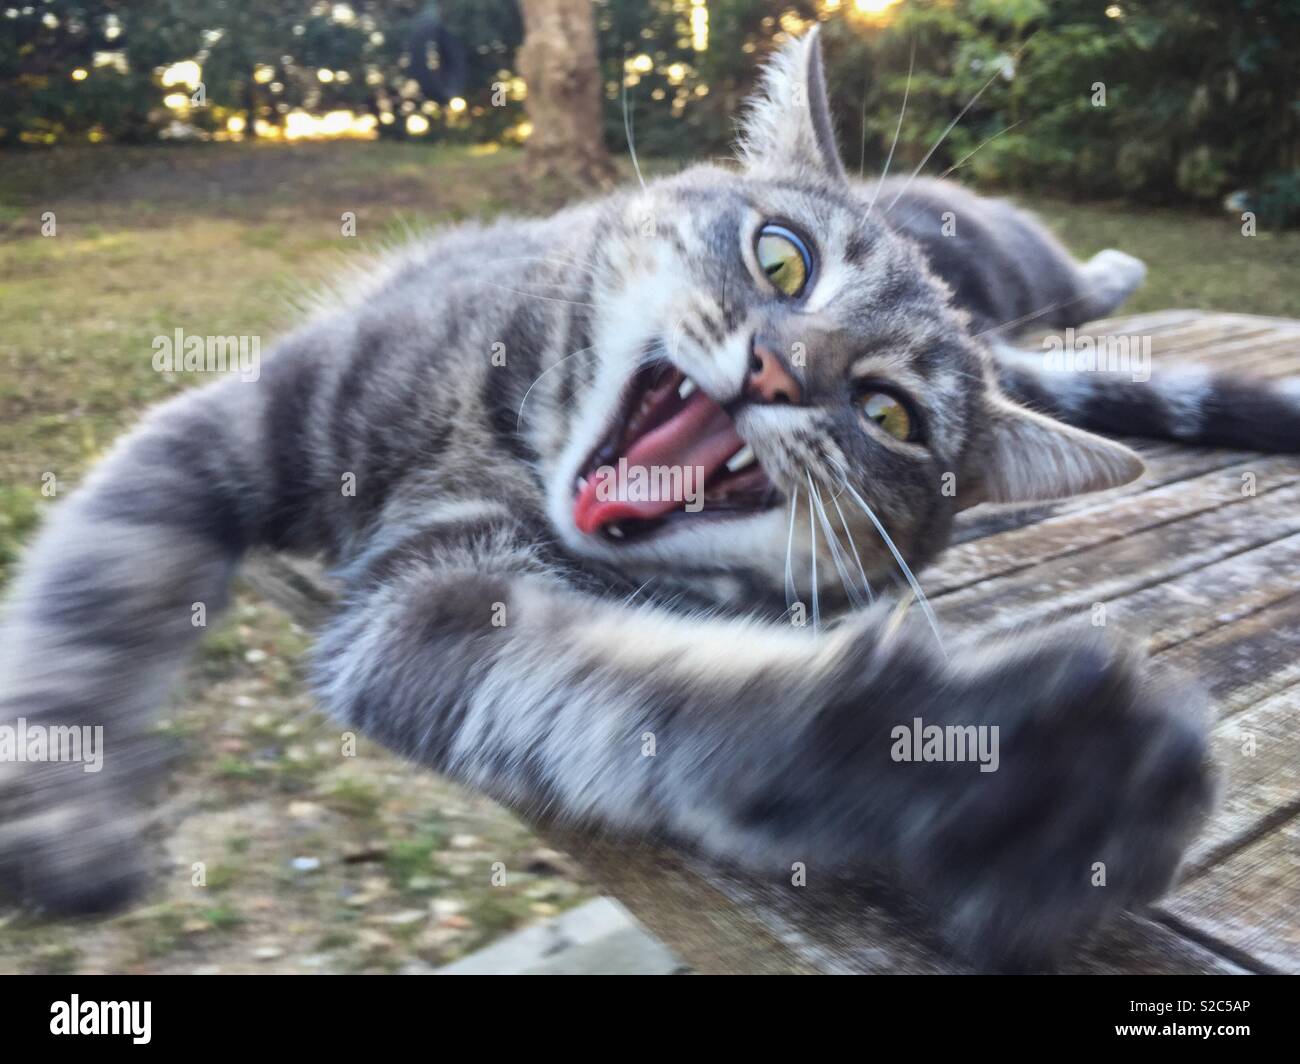 Yawning cat. Stock Photo